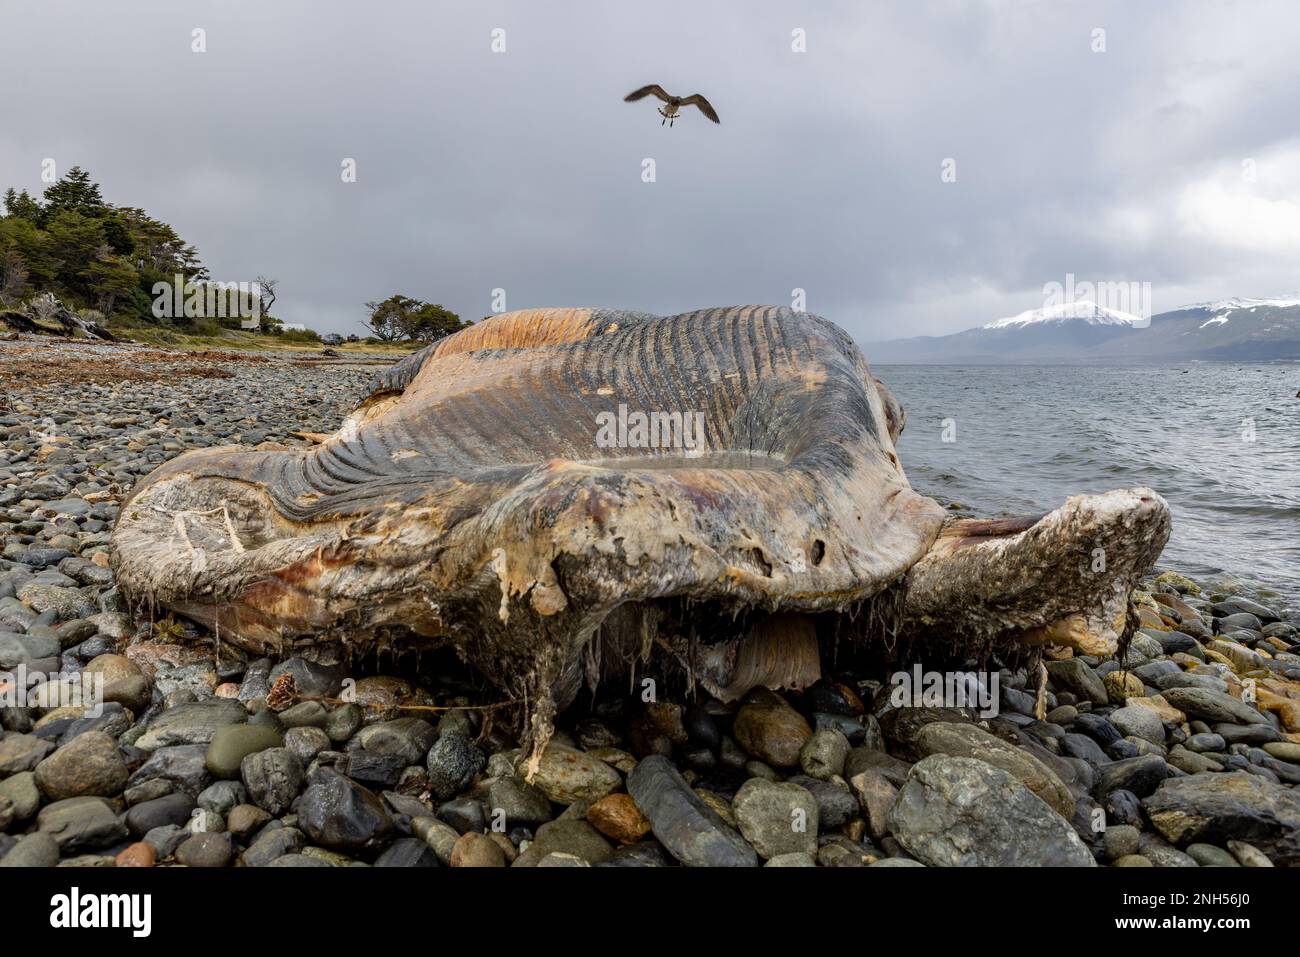 Toter Wal bei einem Unfall mit einem Boot auf einem steinigen Strand nahe Puerto Almanza, Ushuaia, Tierra del Fuego, Argentinien, Südamerika Stockfoto